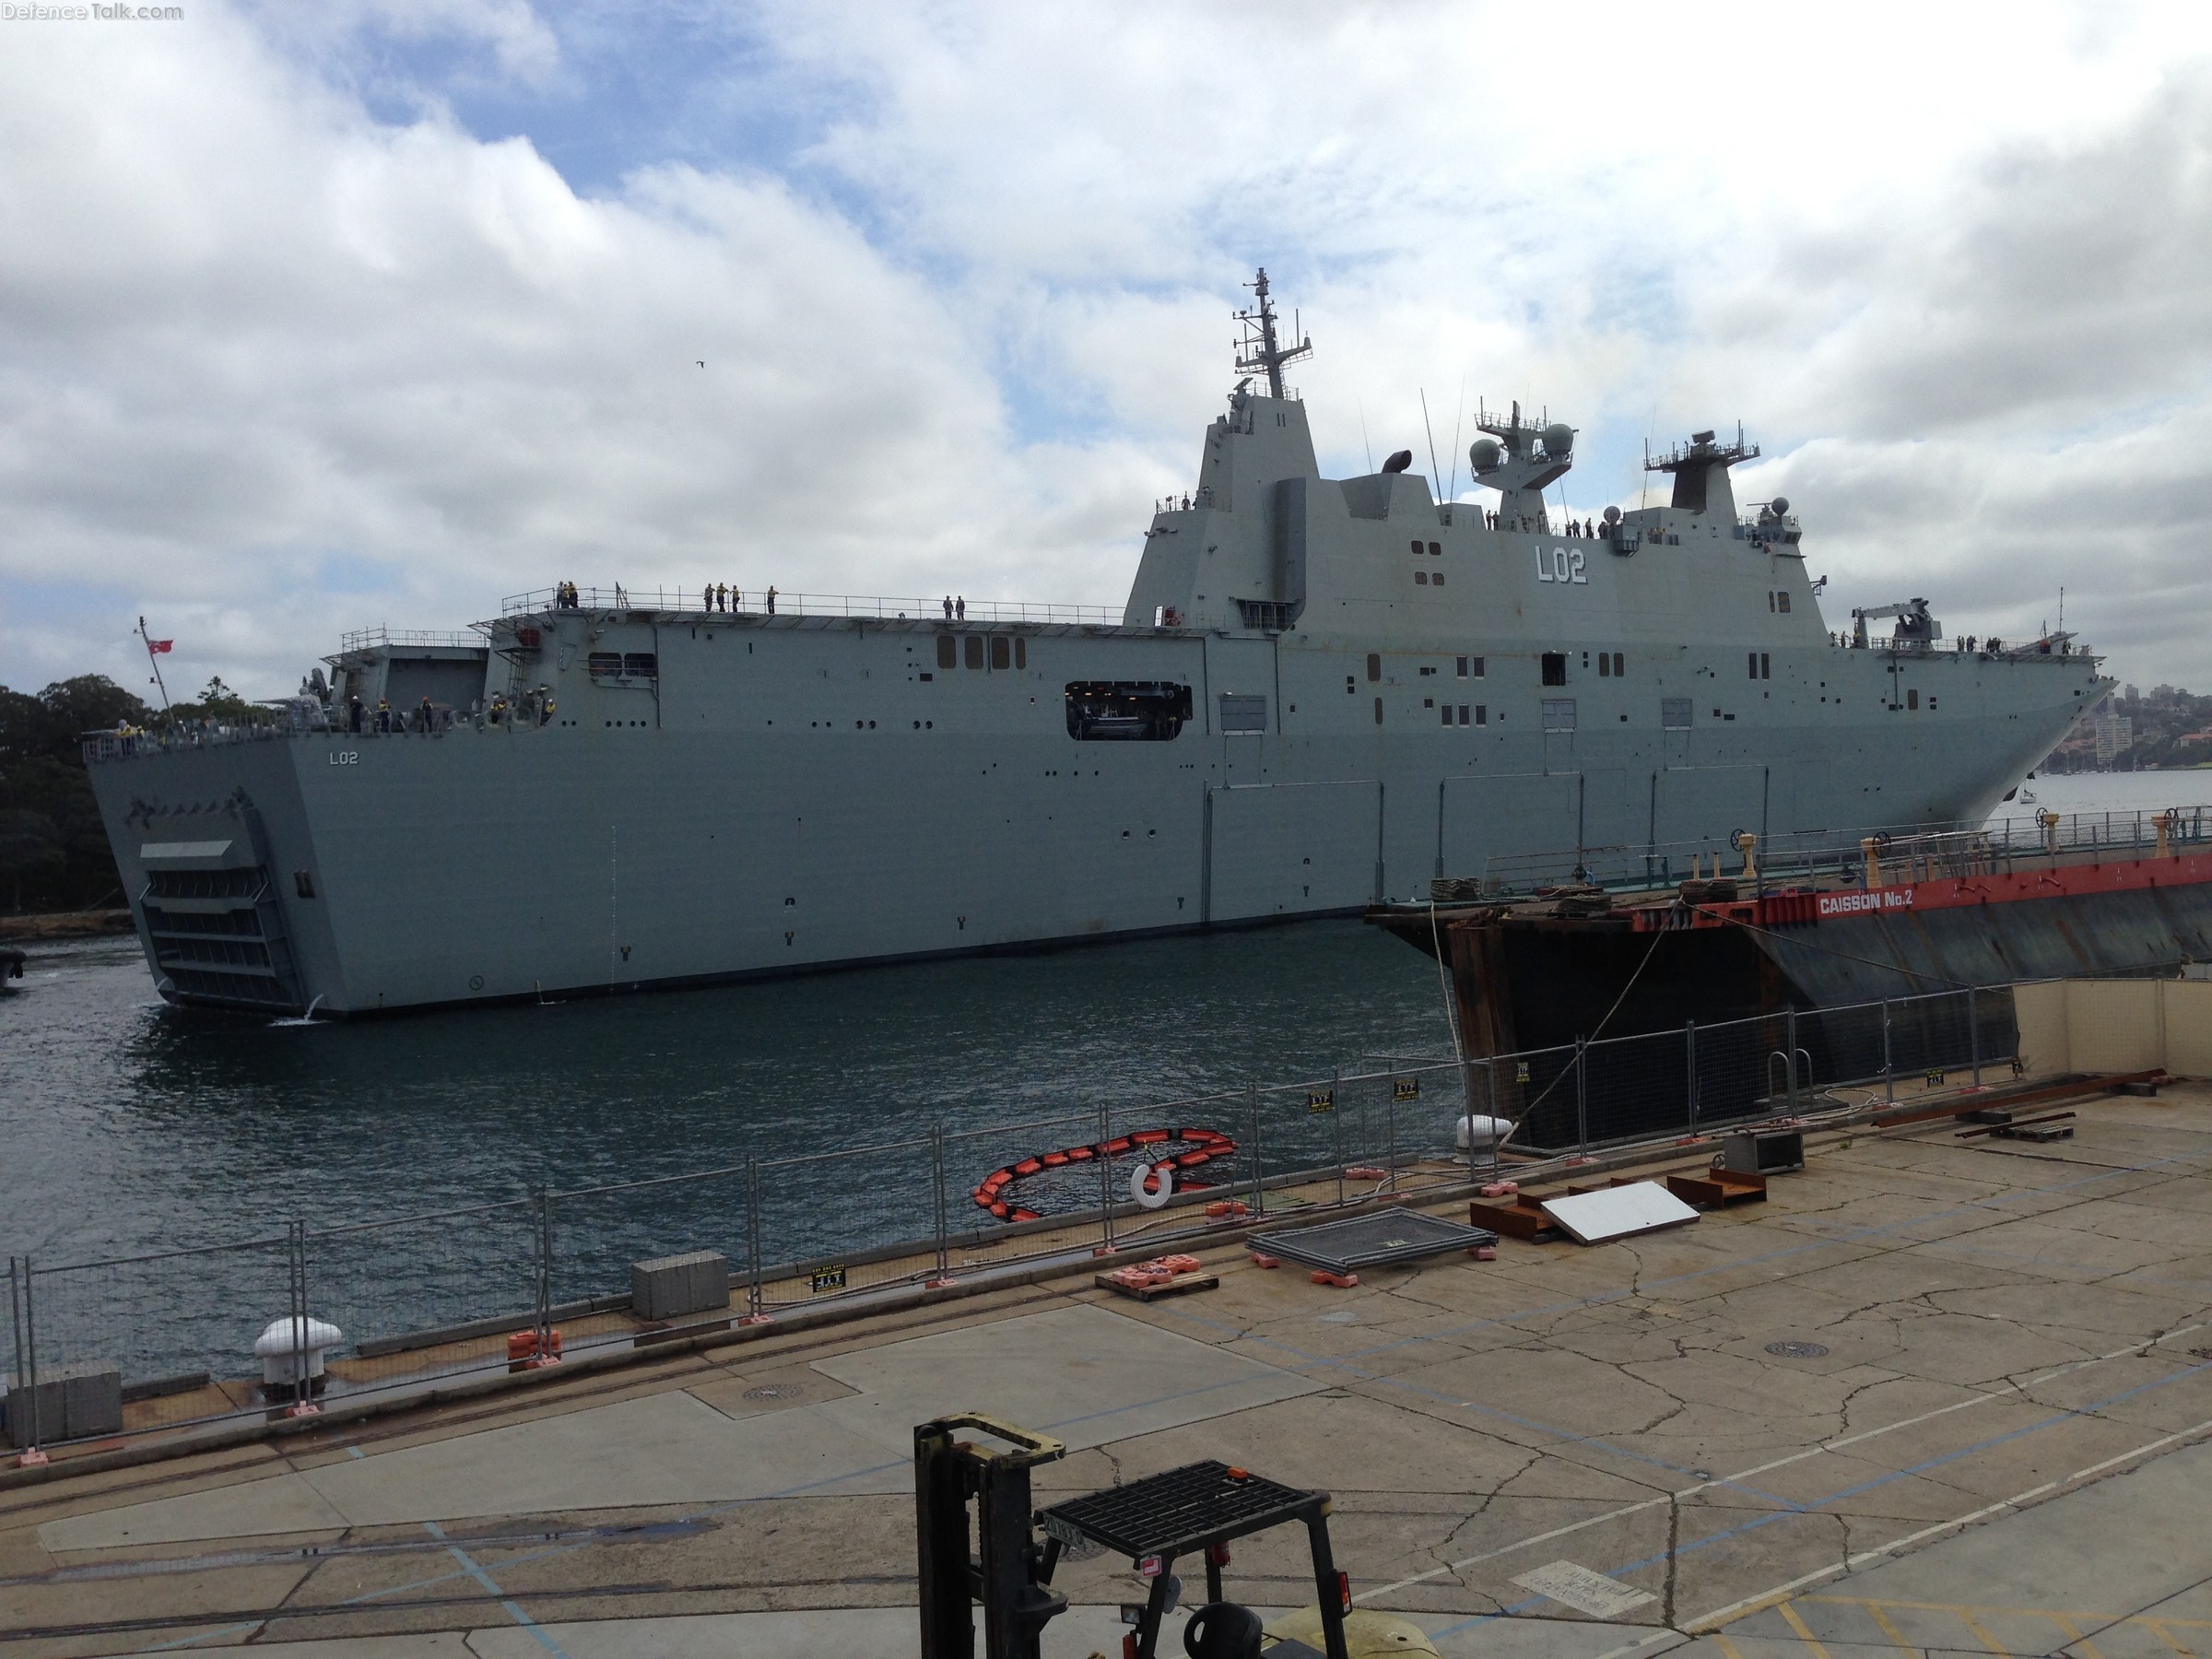 NUship Canberra Arriving in Sydney